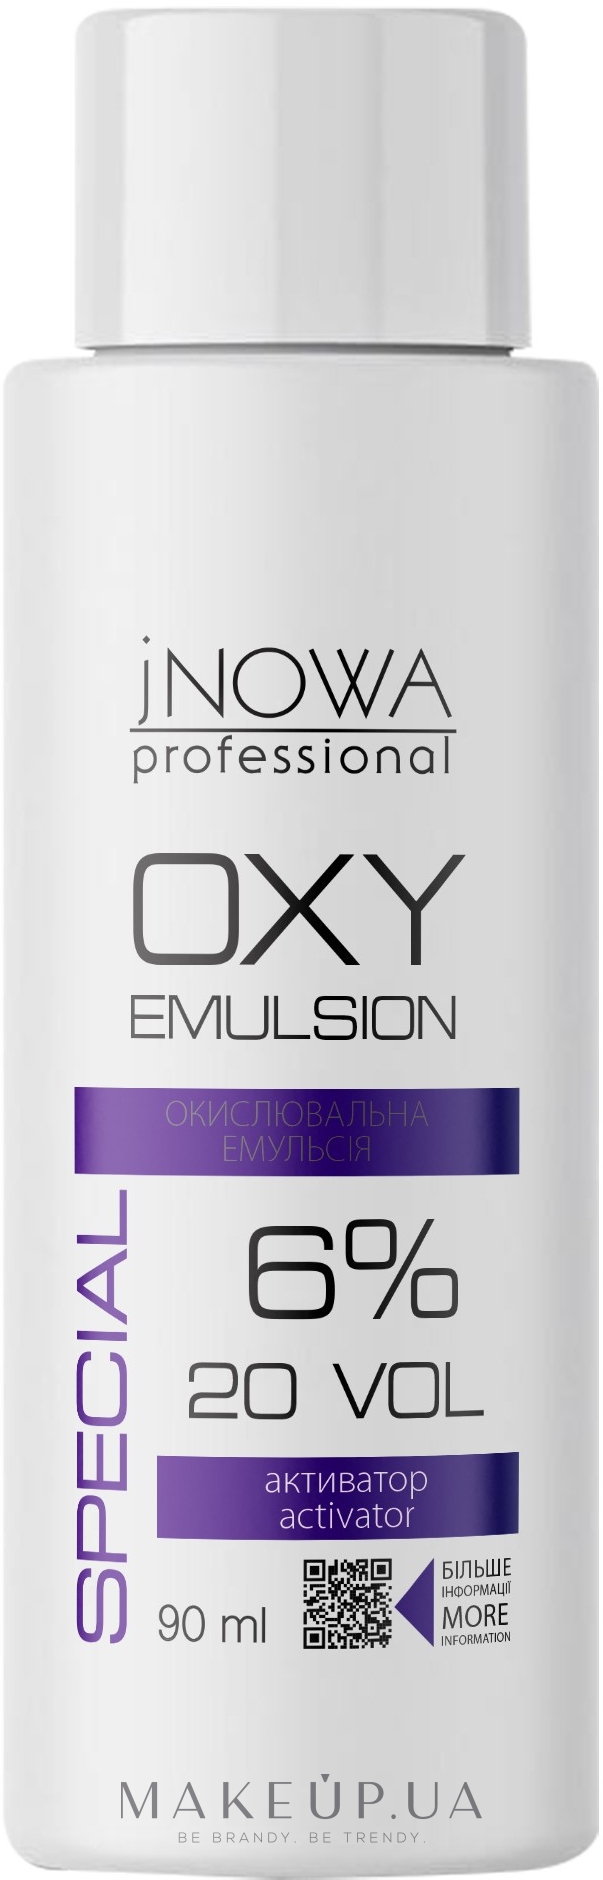 Окислювальна емульсія, 6 %  - jNOWA Professional OXY 6% (20 vol) — фото 90ml